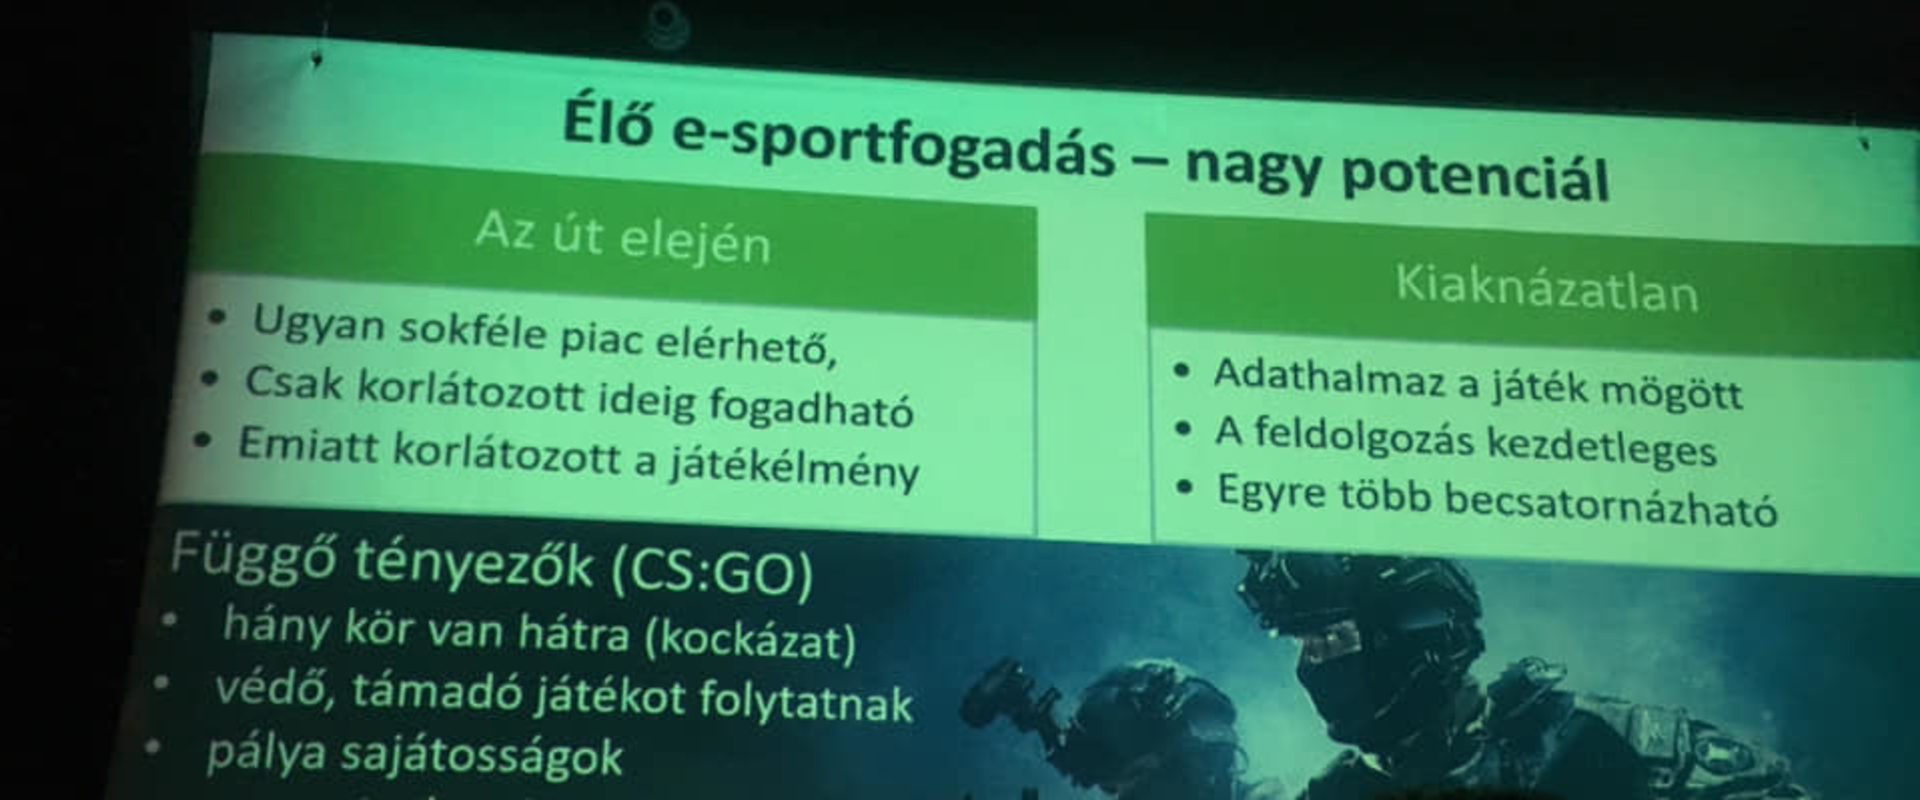 Már Magyarországon is közelít egymáshoz a fogadás és az e-sport